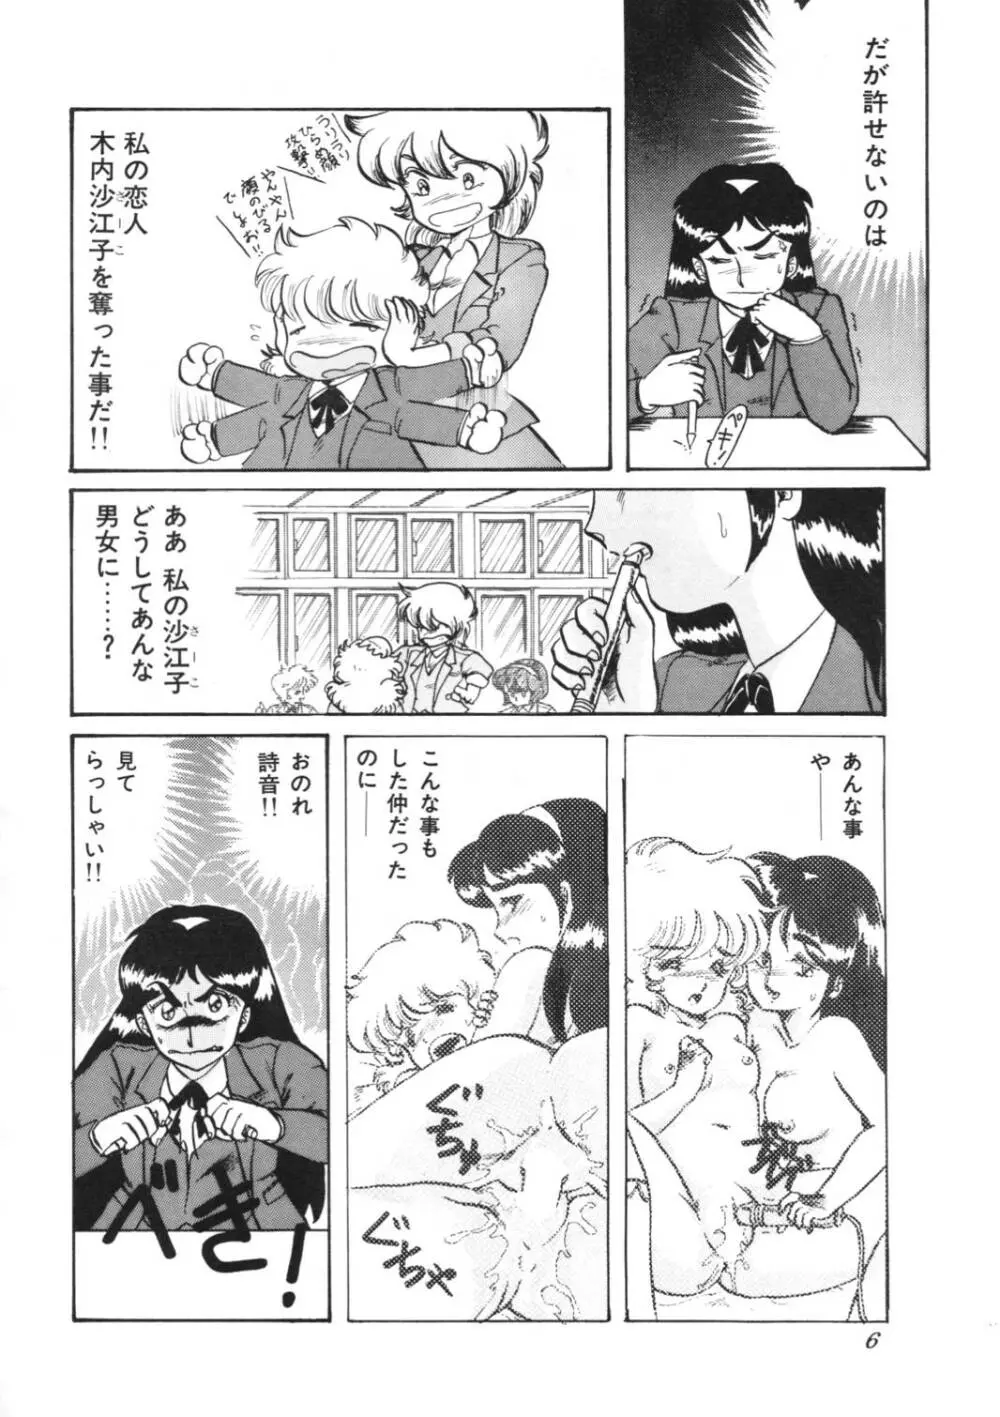 葵つくし Emergency H3 SHION 1989 6ページ